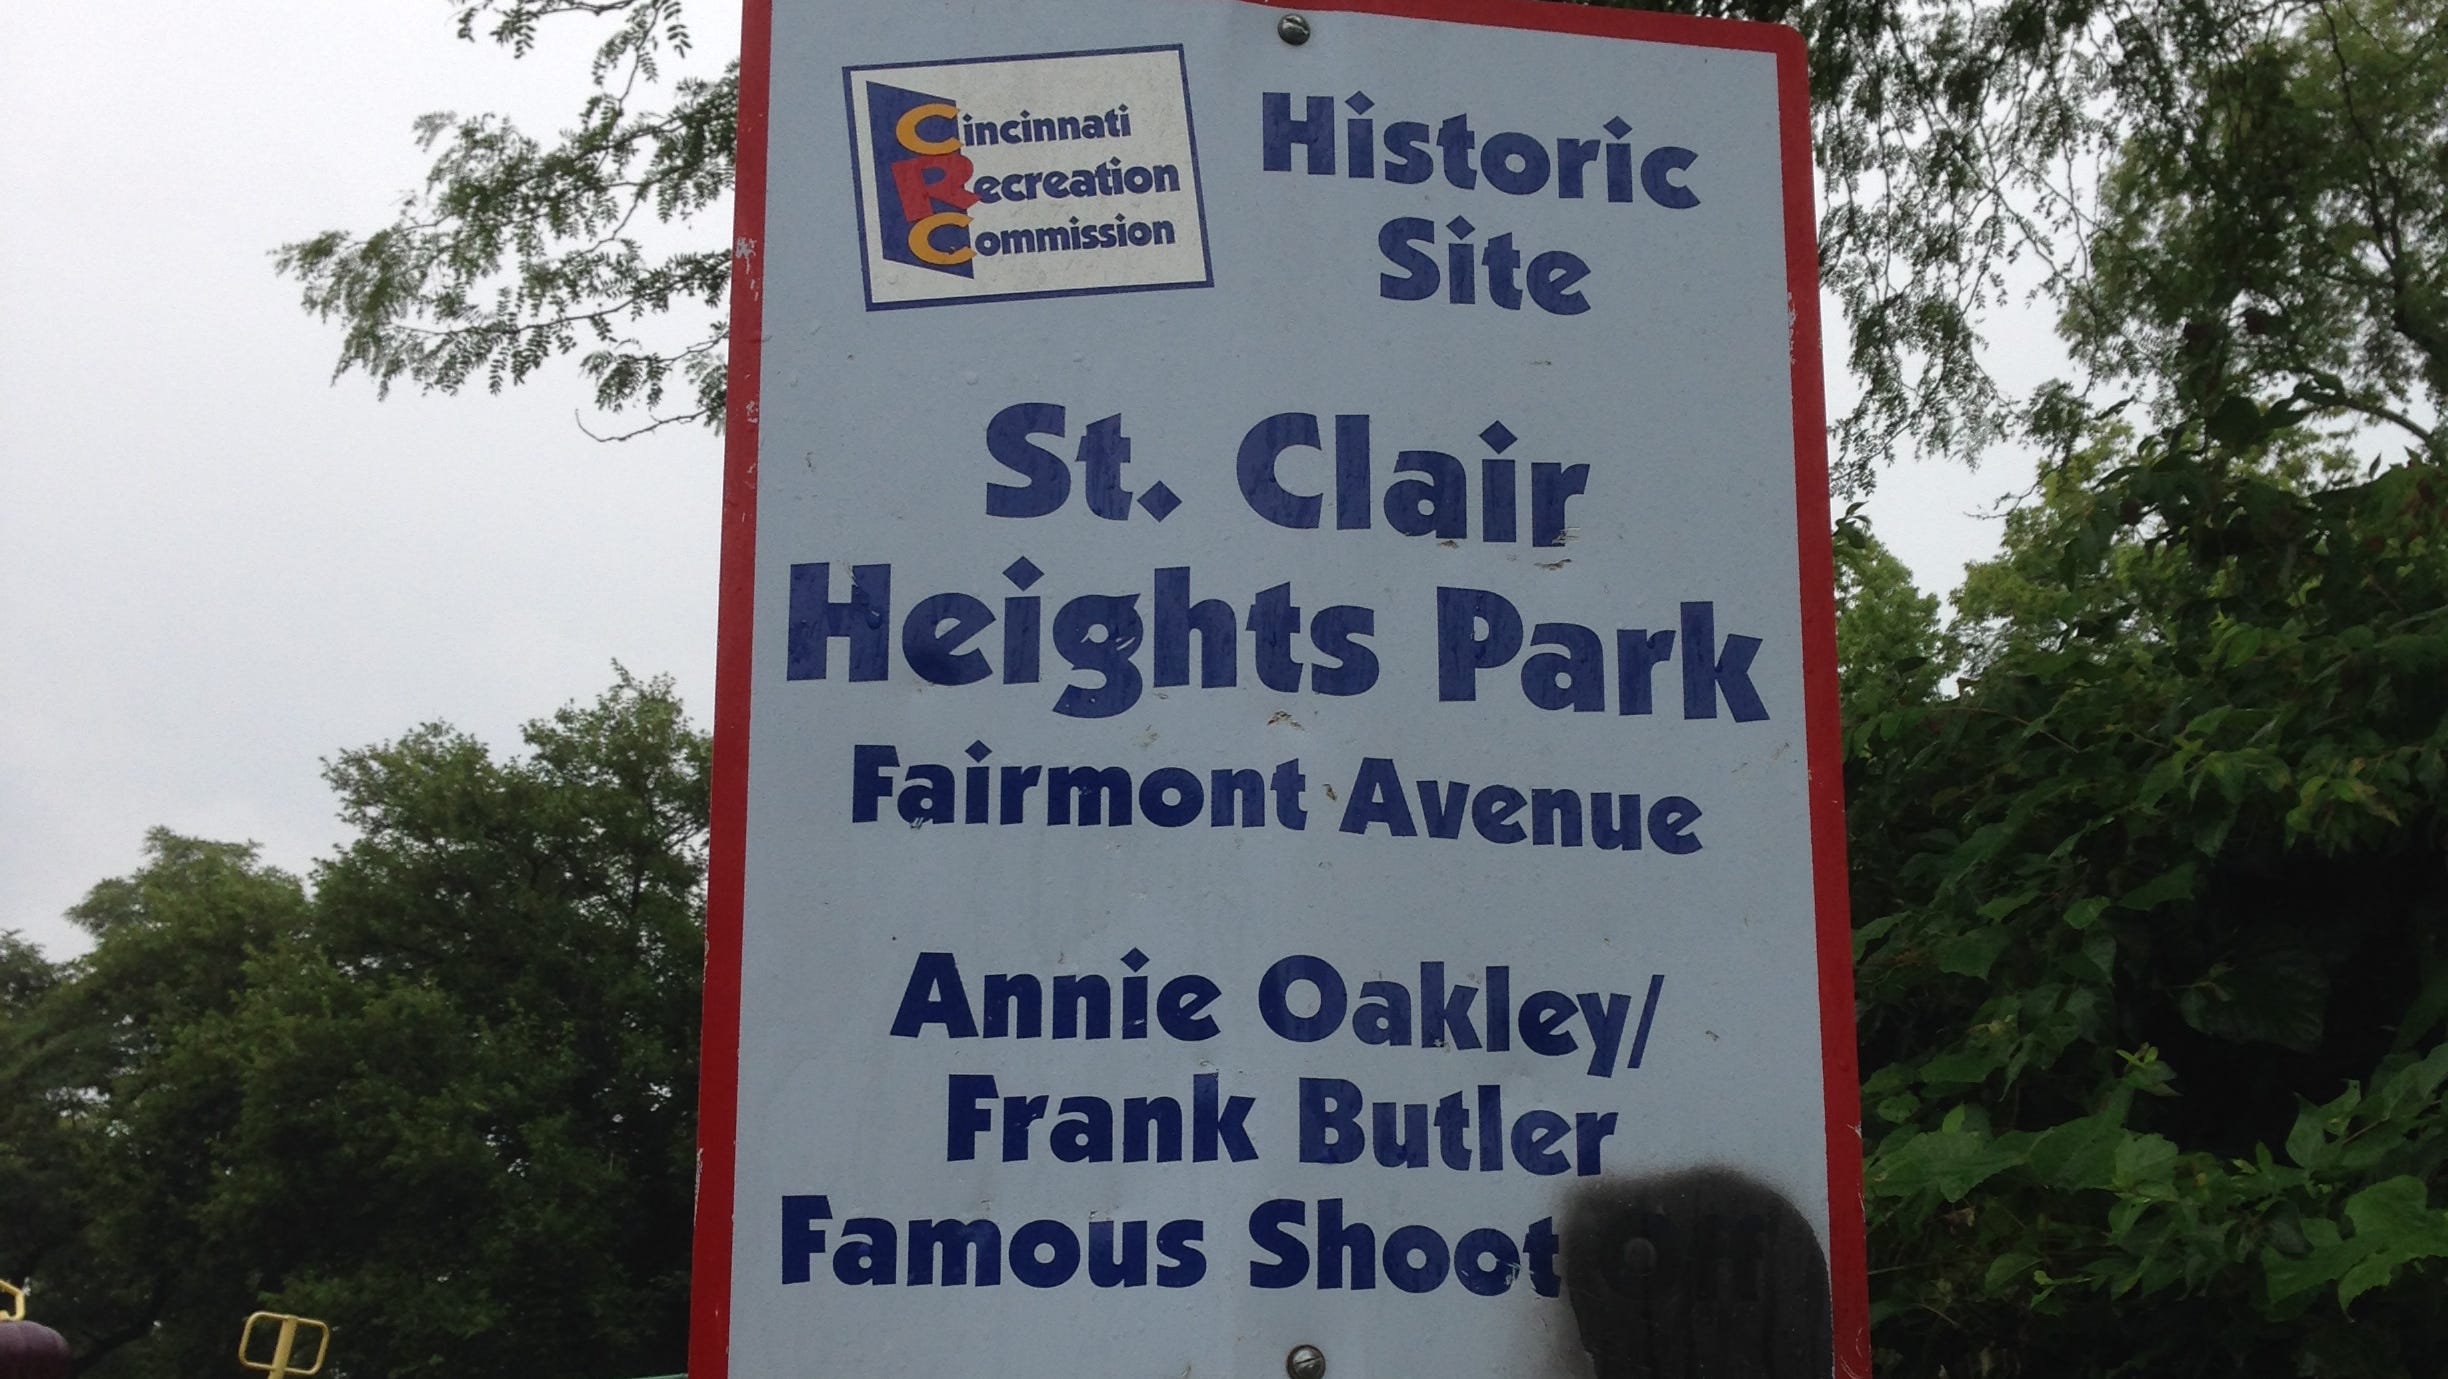 Did Annie Oakley shooting contest happen in Cincinnati?